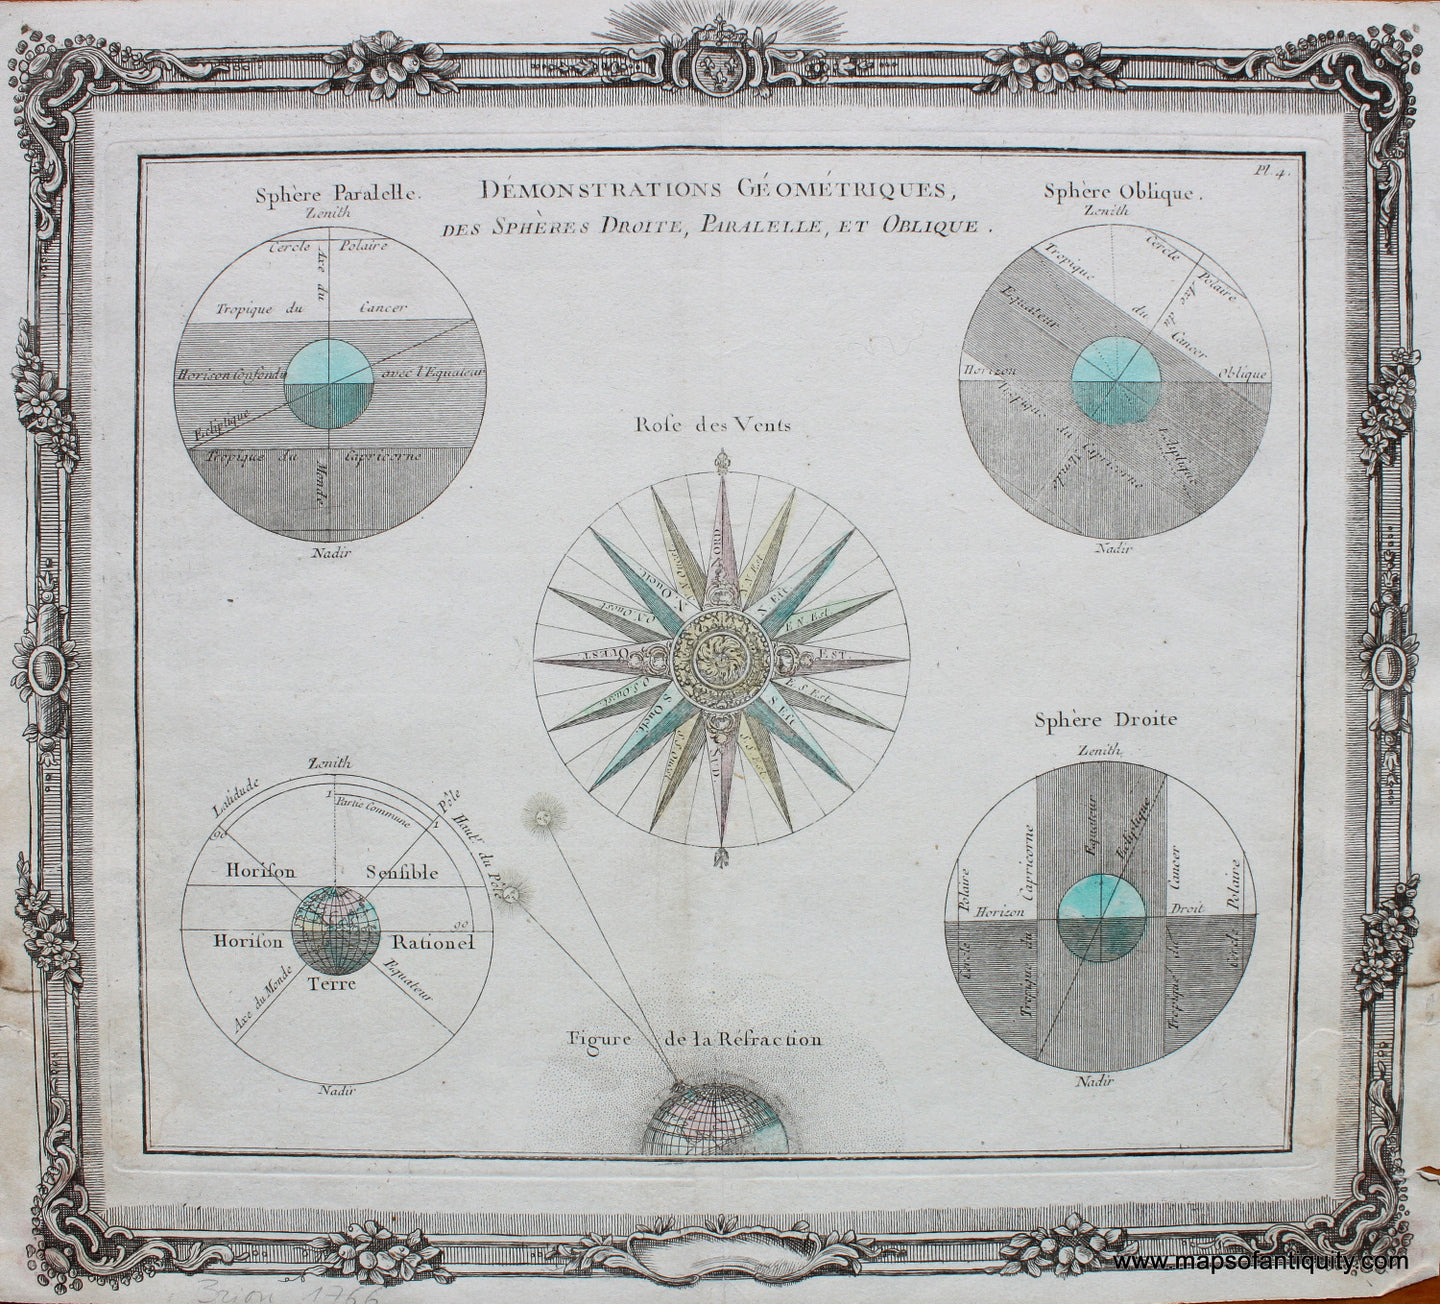 Antique-Hand-Colored-Print-Demonstrations-Geometriques-des-Spheres-Droite-Paralelle-et-Oblique-Celestial--1766-Brion-de-la-Tour-Maps-Of-Antiquity